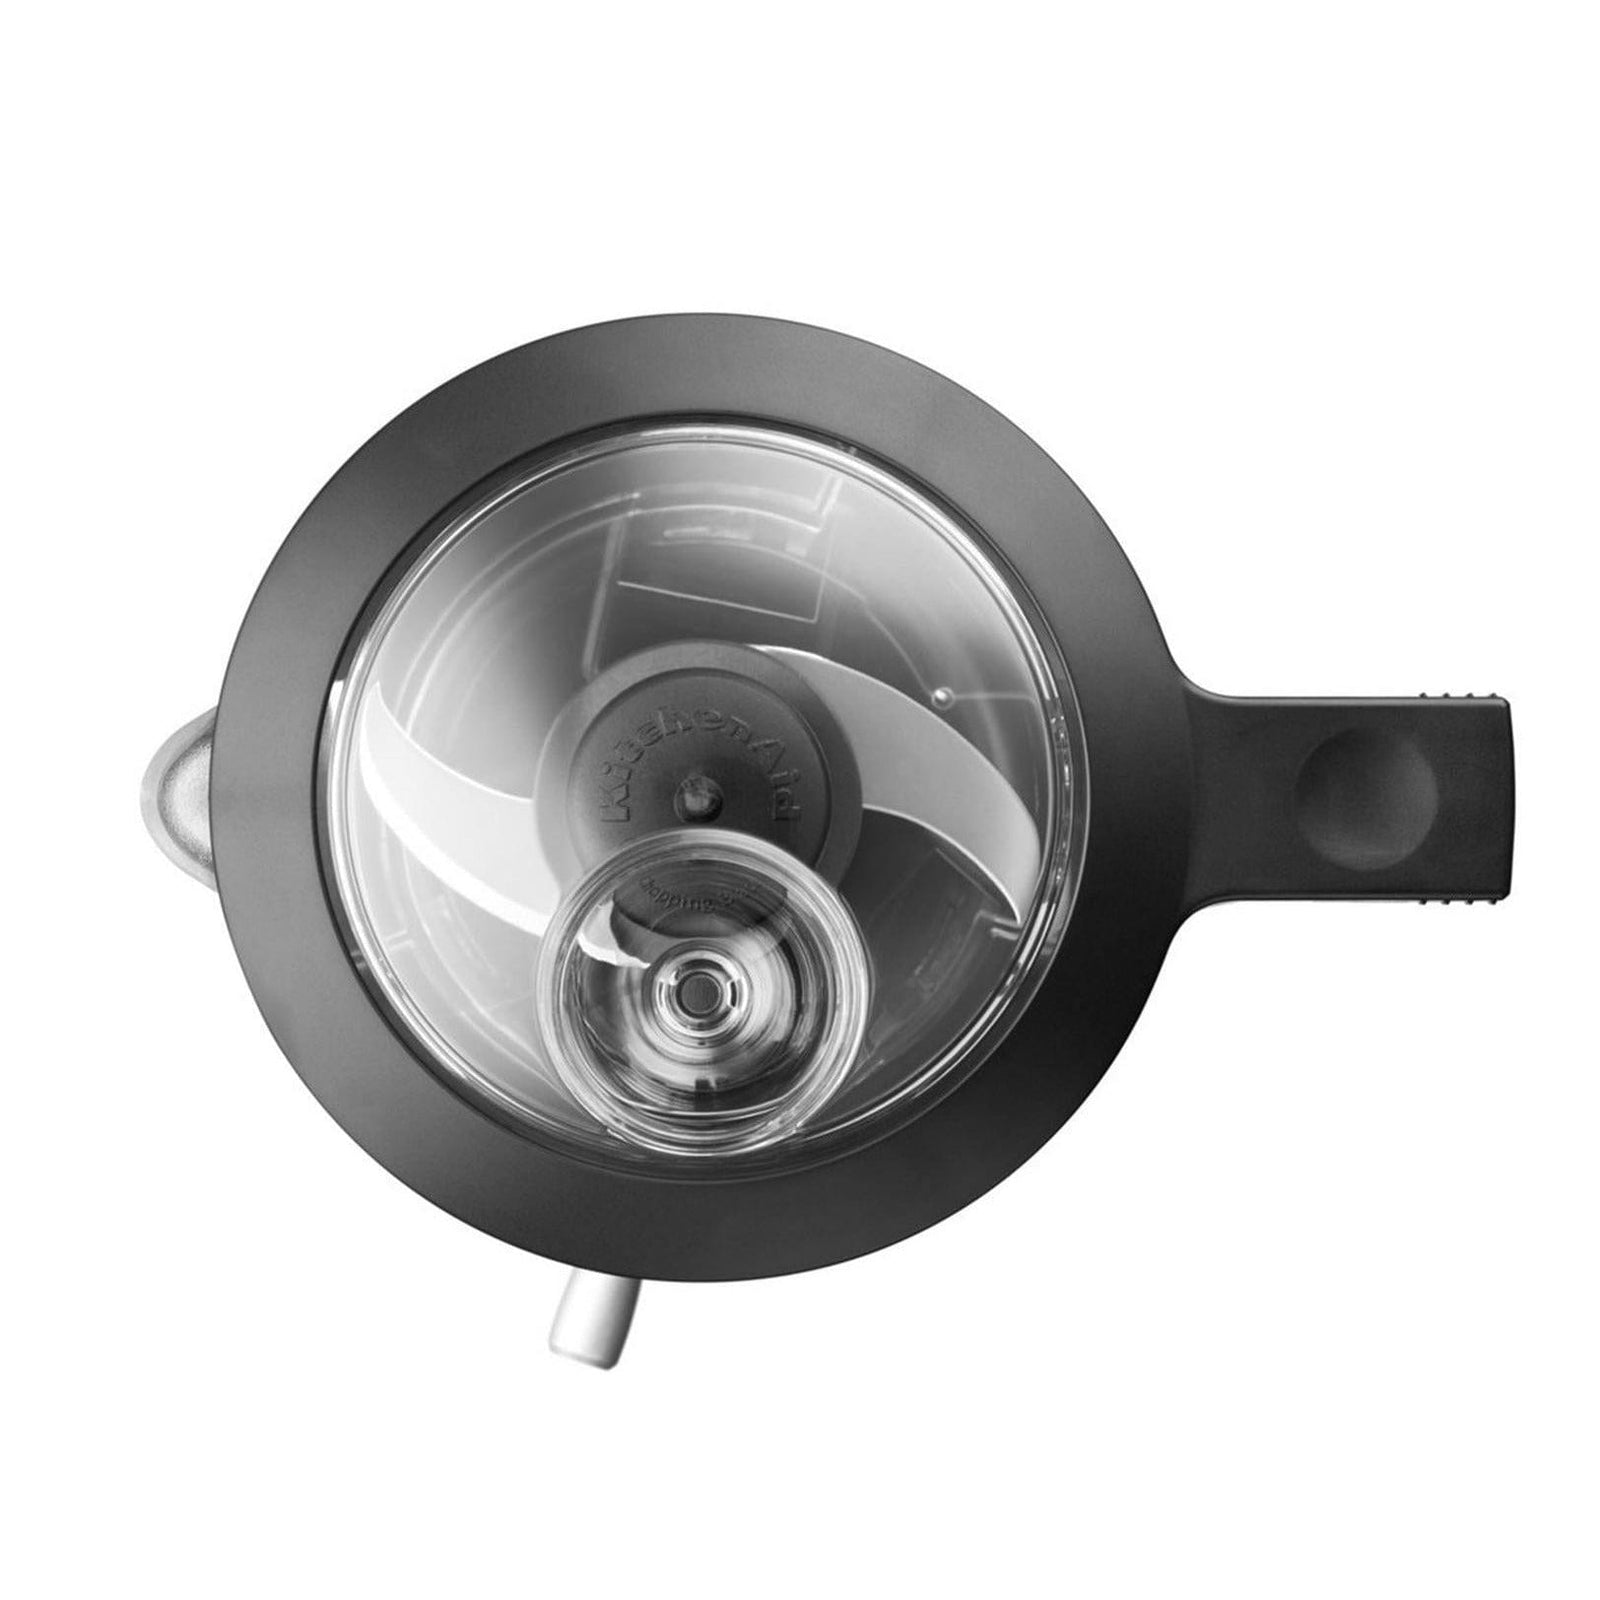 KitchenAid Mini Food Processor in Onyx Black